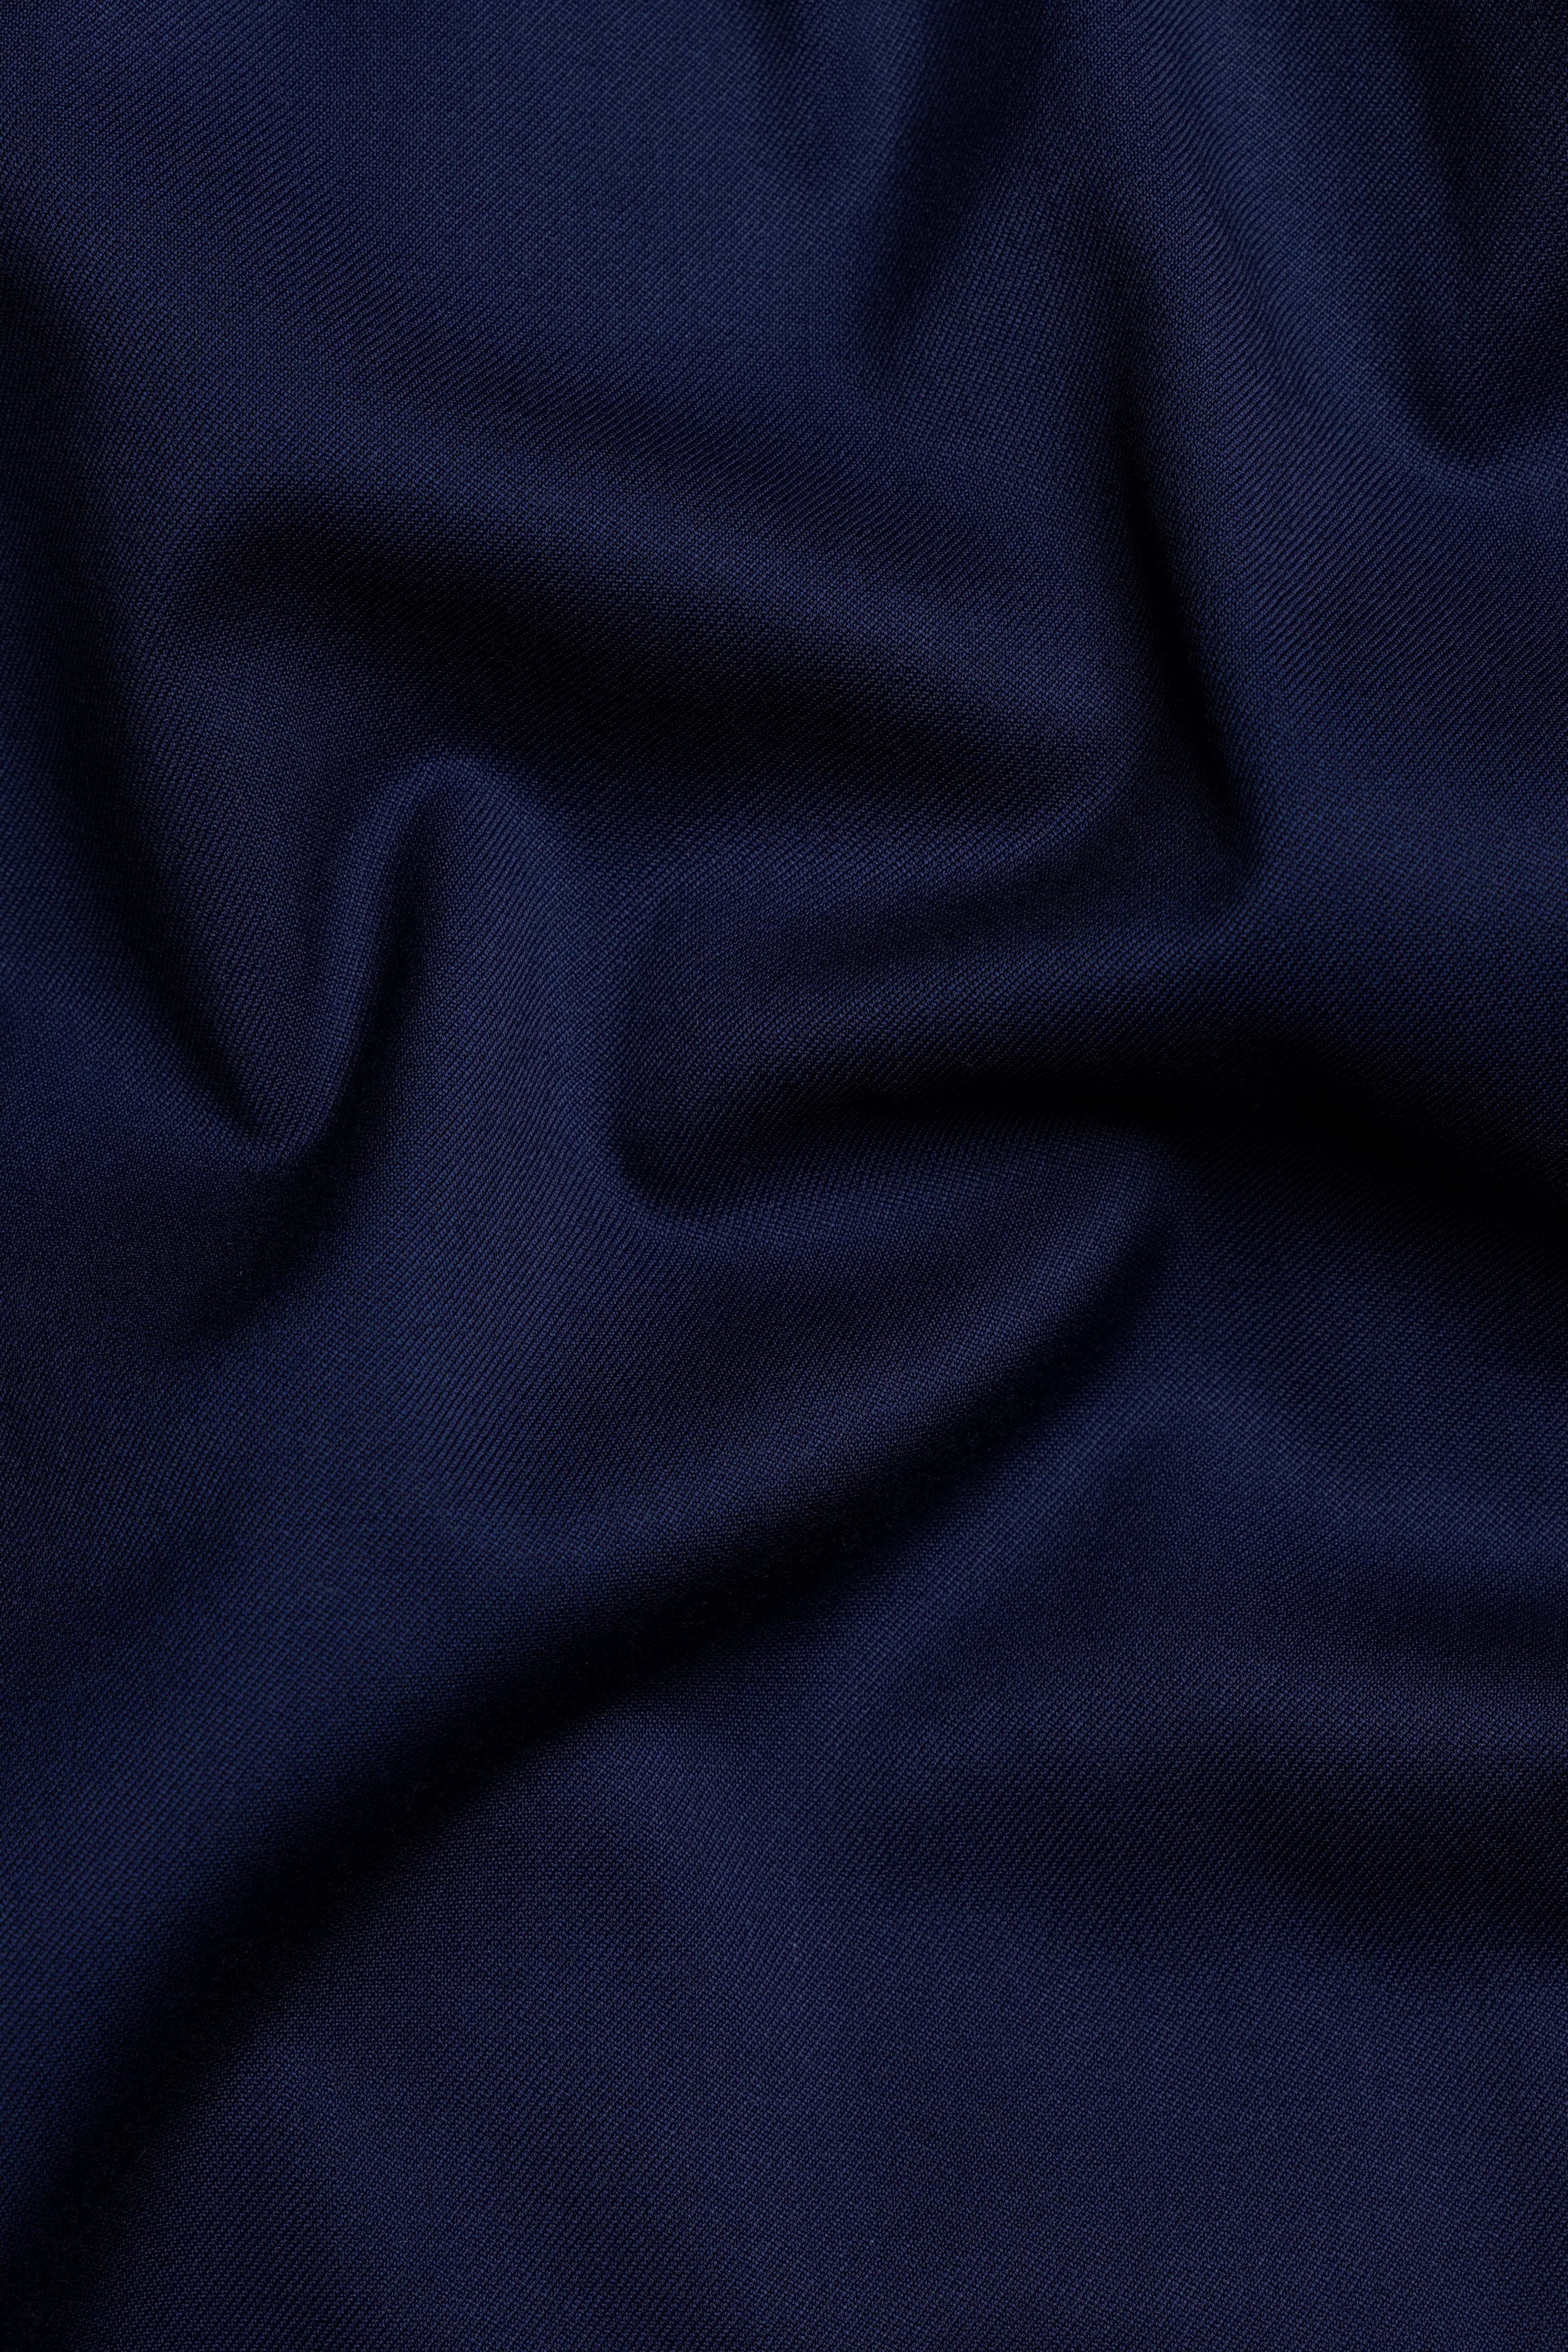 Cinder Blue Wool Rich Pant T3077-28, T3077-30, T3077-32, T3077-34, T3077-36, T3077-38, T3077-40, T3077-42, T3077-44